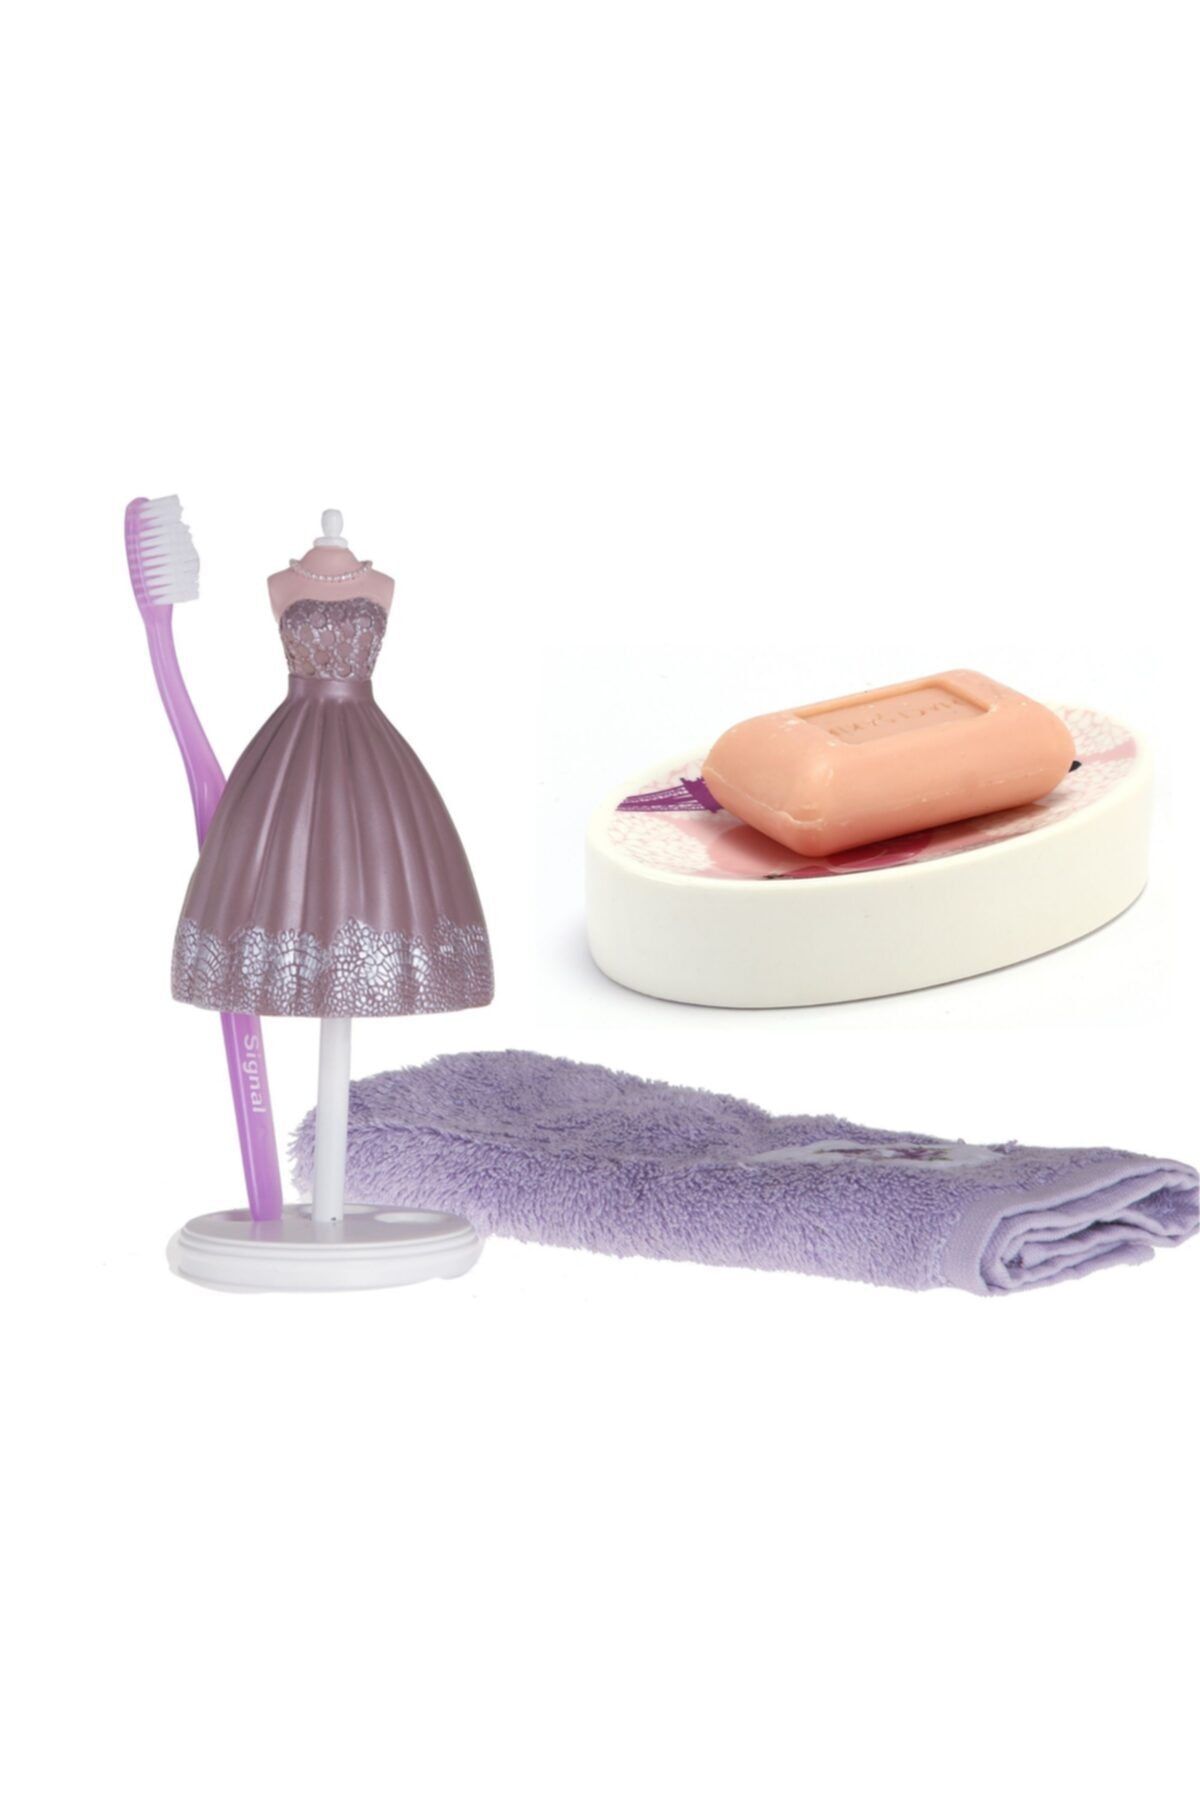 Bosphorus Sabunluk Diş Firçalik 2 Li Banyo Seti Inci Elbiseli Kadın Model